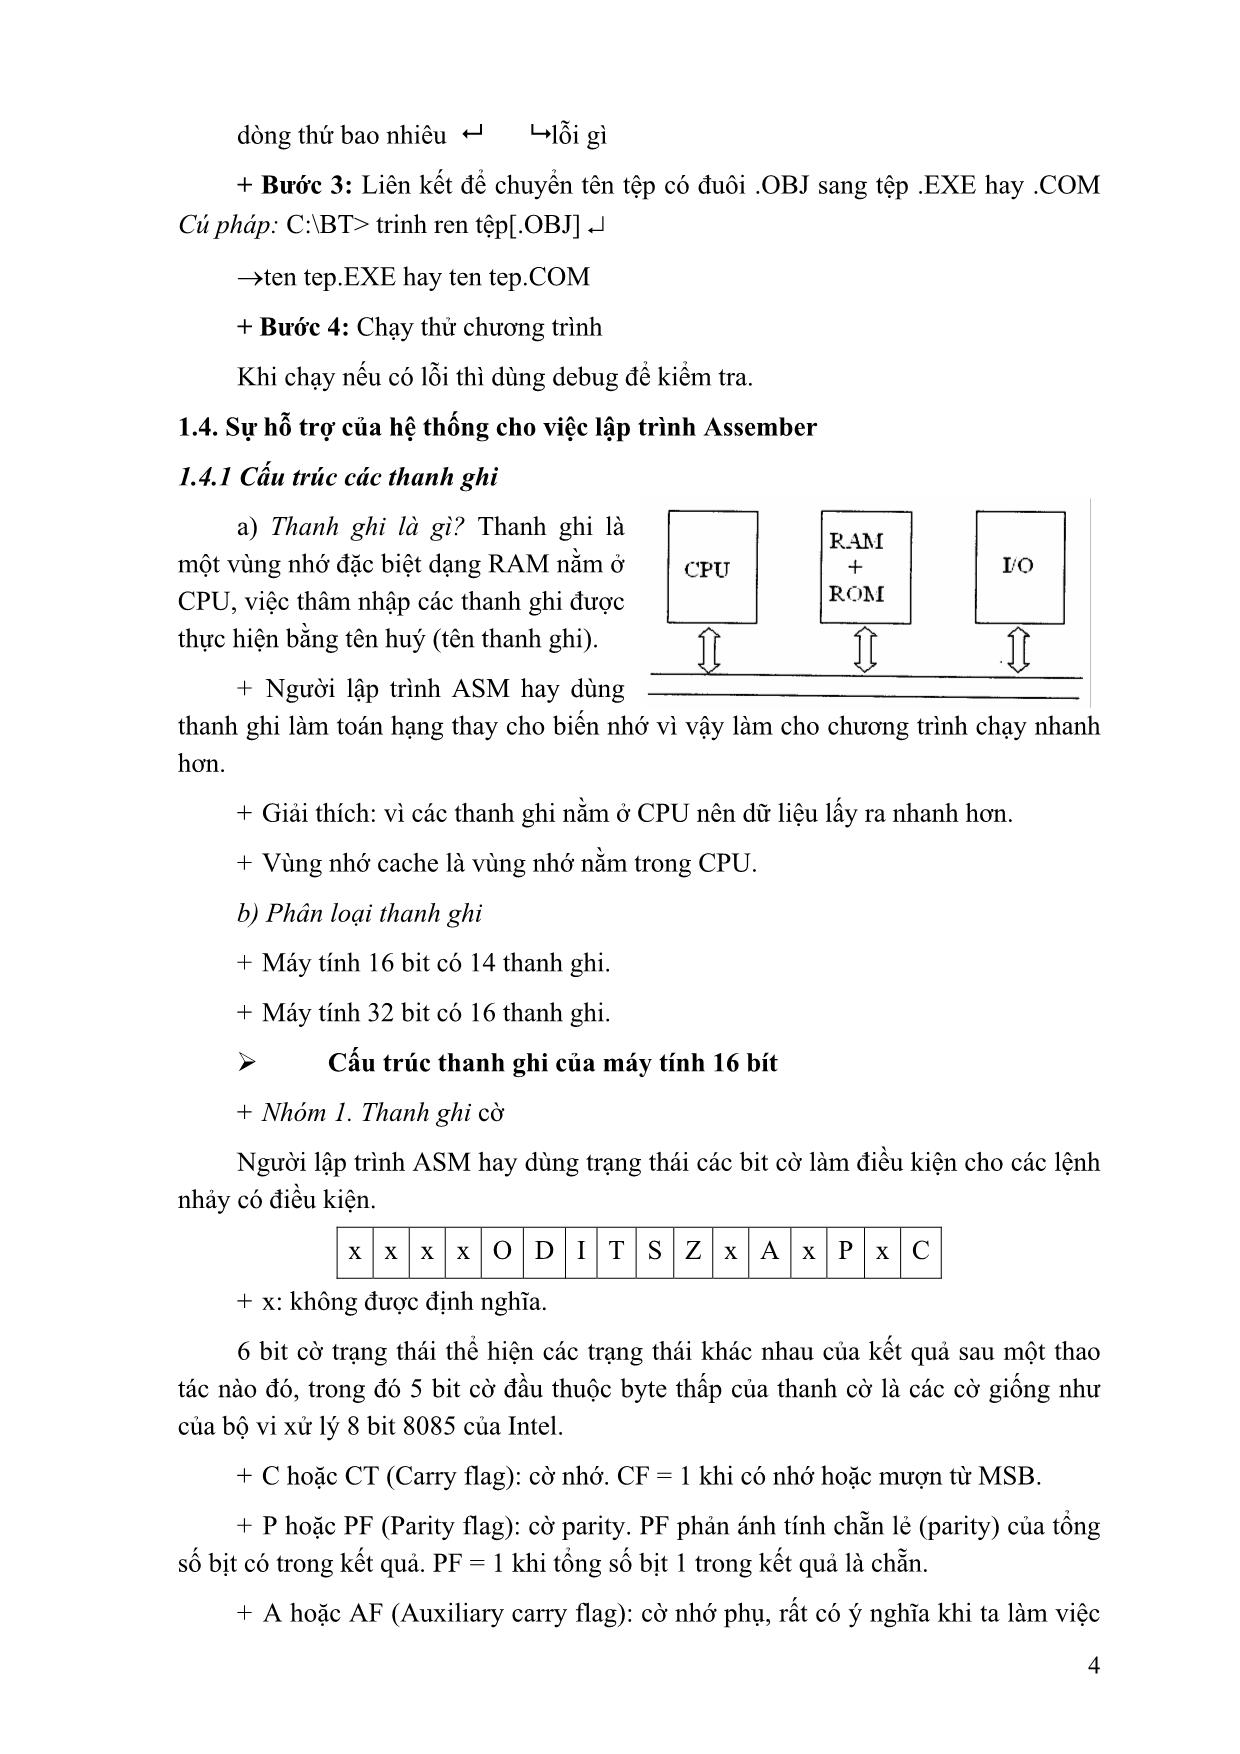 Giáo trình Lập trình hợp ngữ (Phần 1) trang 4